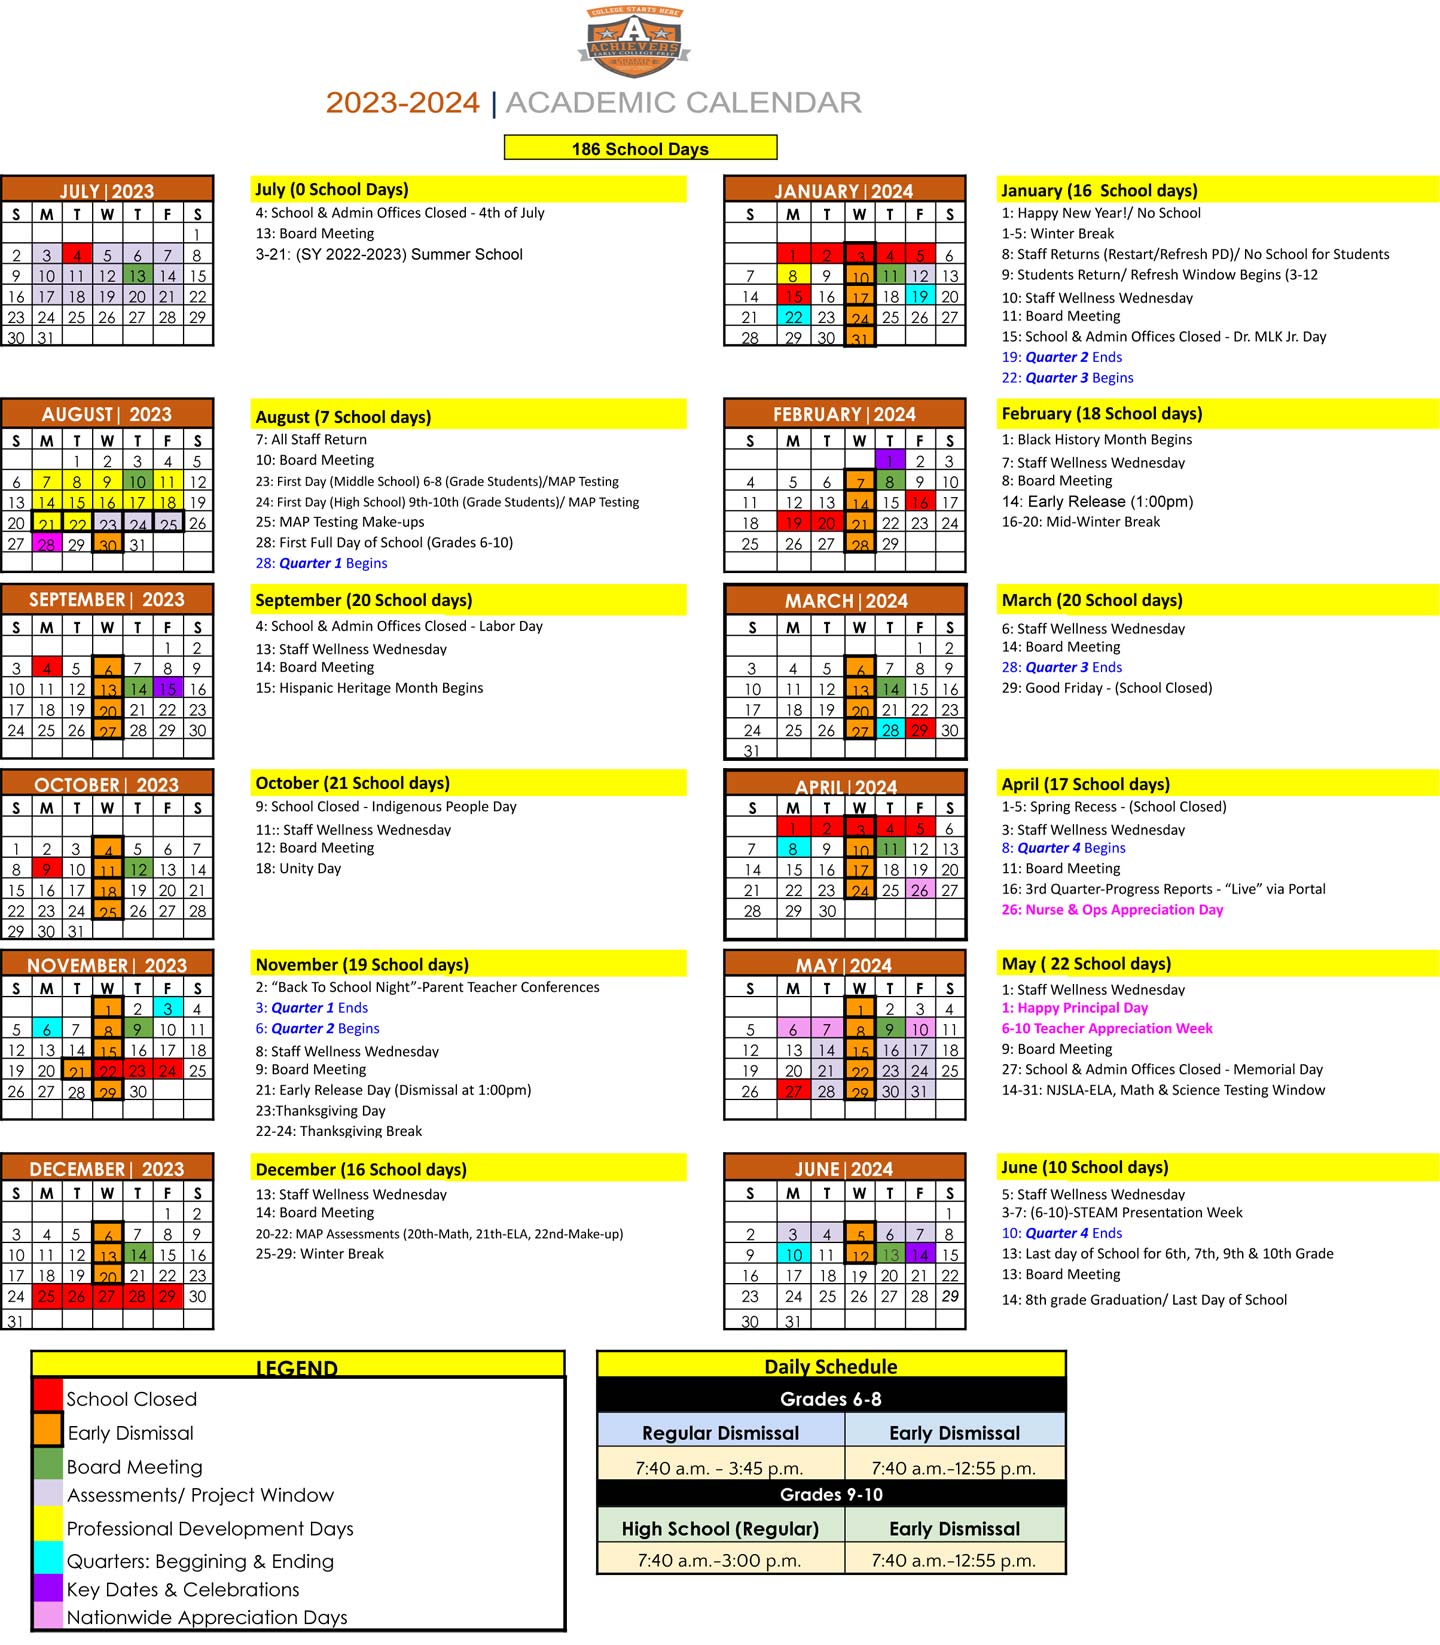 AECP School Calendar - 2023-2024